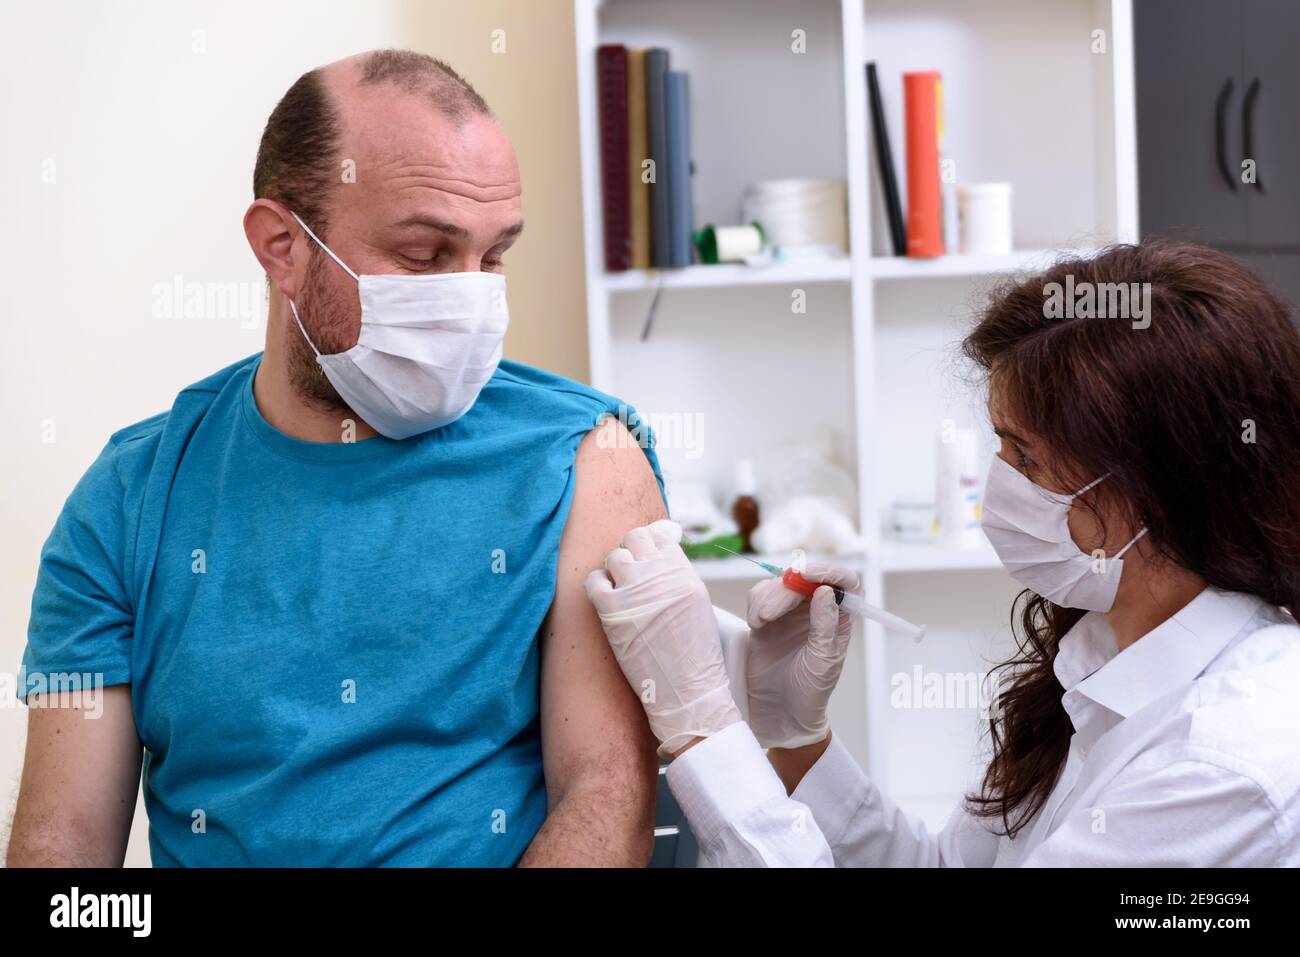 Médecin en gants tenant la seringue et faisant l'injection au patient dans le masque médical. Banque D'Images